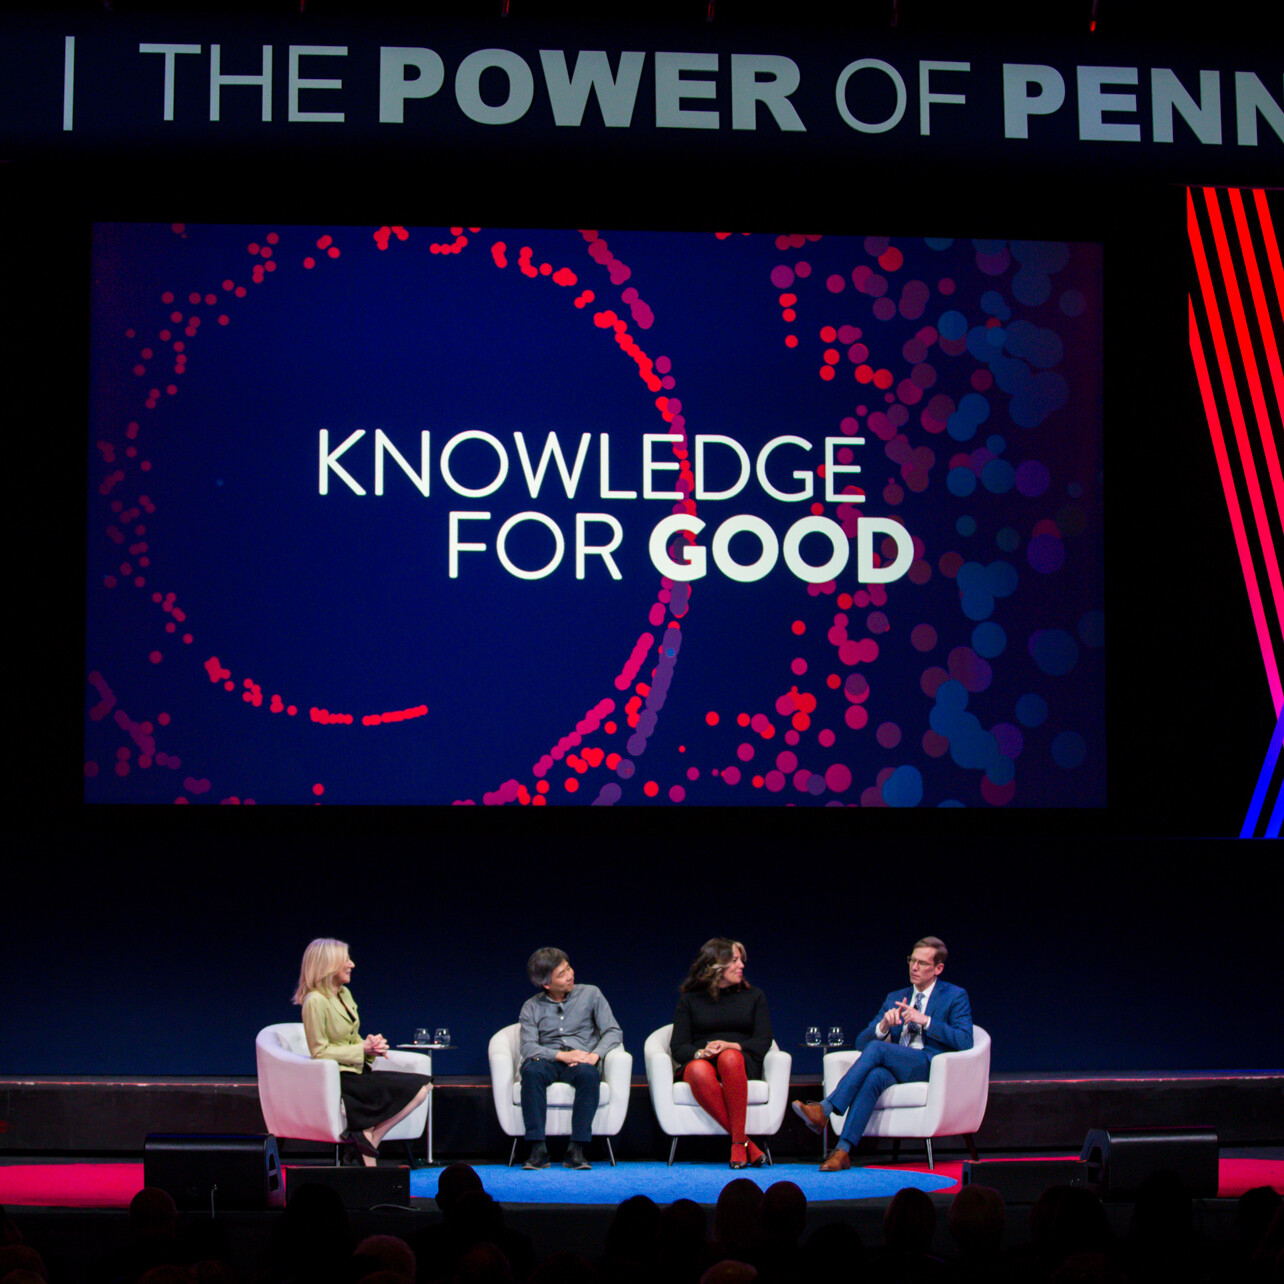 The Power of Penn - Philadelphia